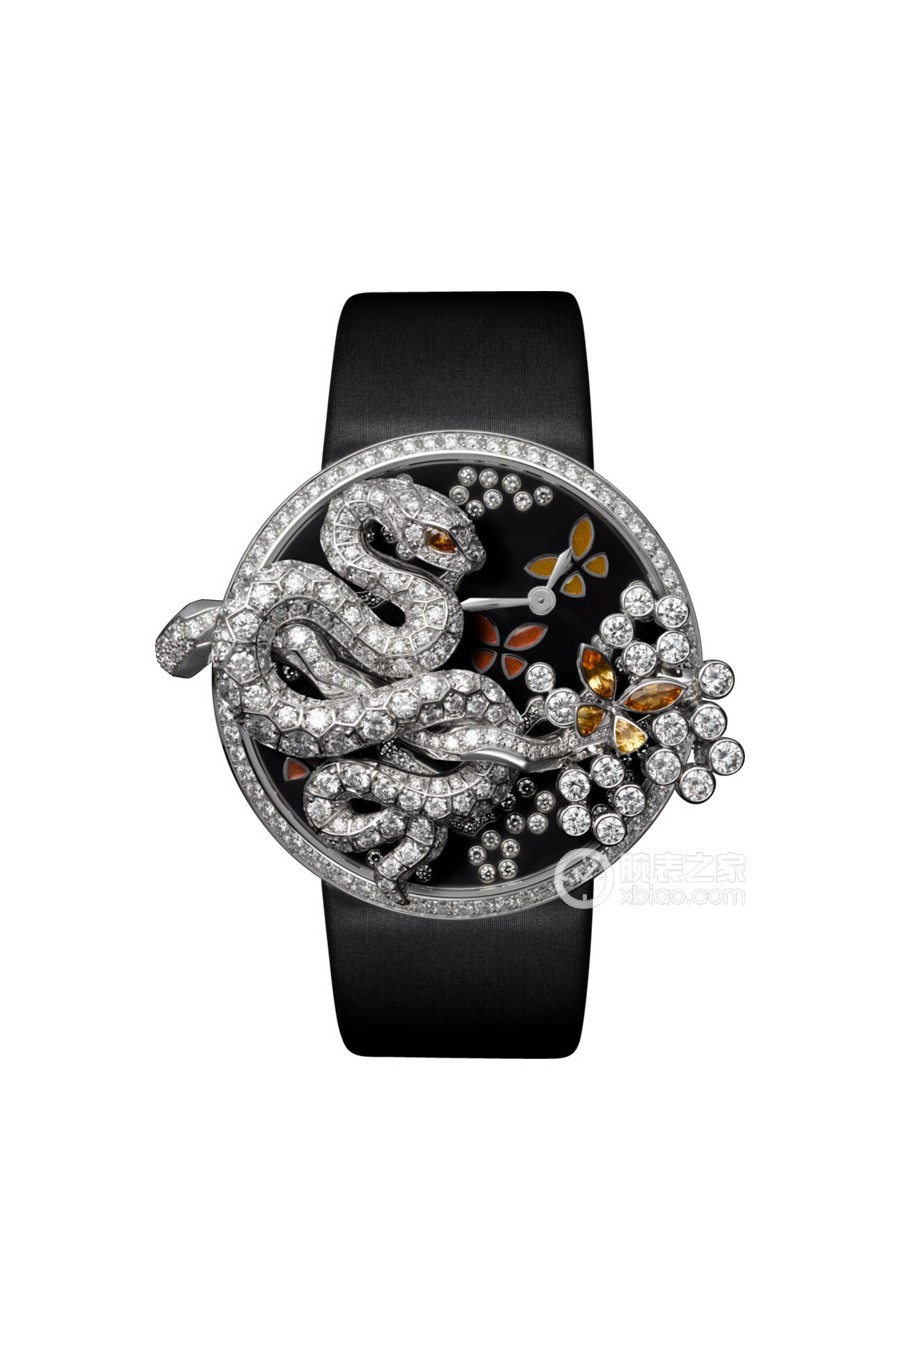 卡地亚创意宝石腕表系列HPI00609